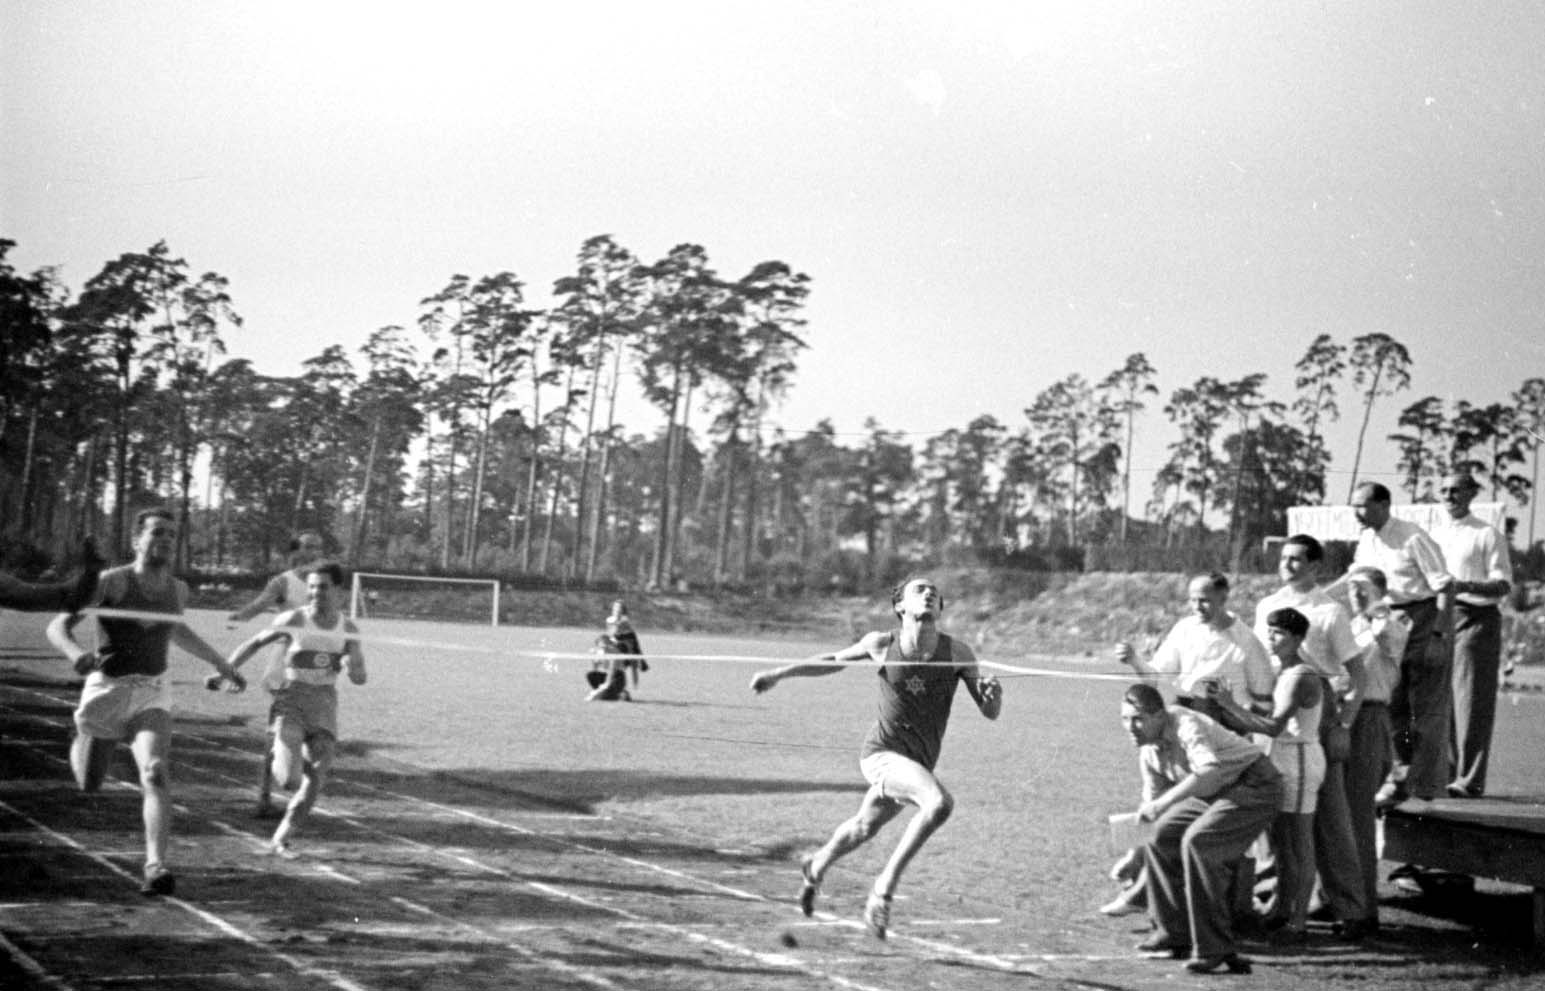 ברלין, גרמניה, לפני המלחמה, ארוע ספורט: תחרות ריצה